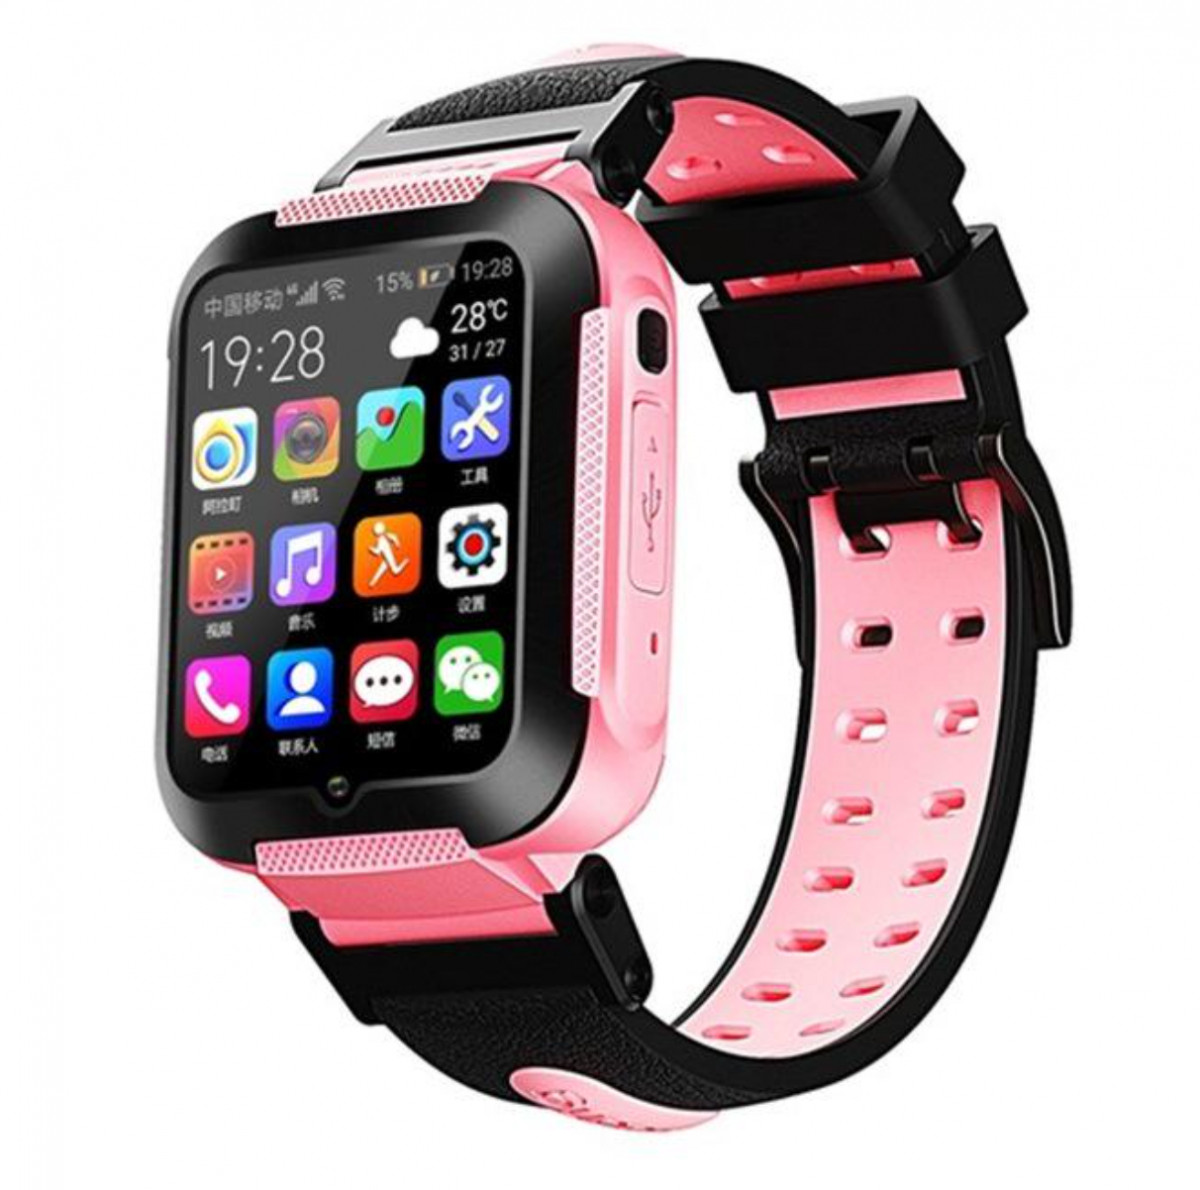 Дитячі розумні смарт-годинник (телефон) Smart Baby Watch K70 Android чорно-рожеві ( 4 ядра) UB арт. 8448